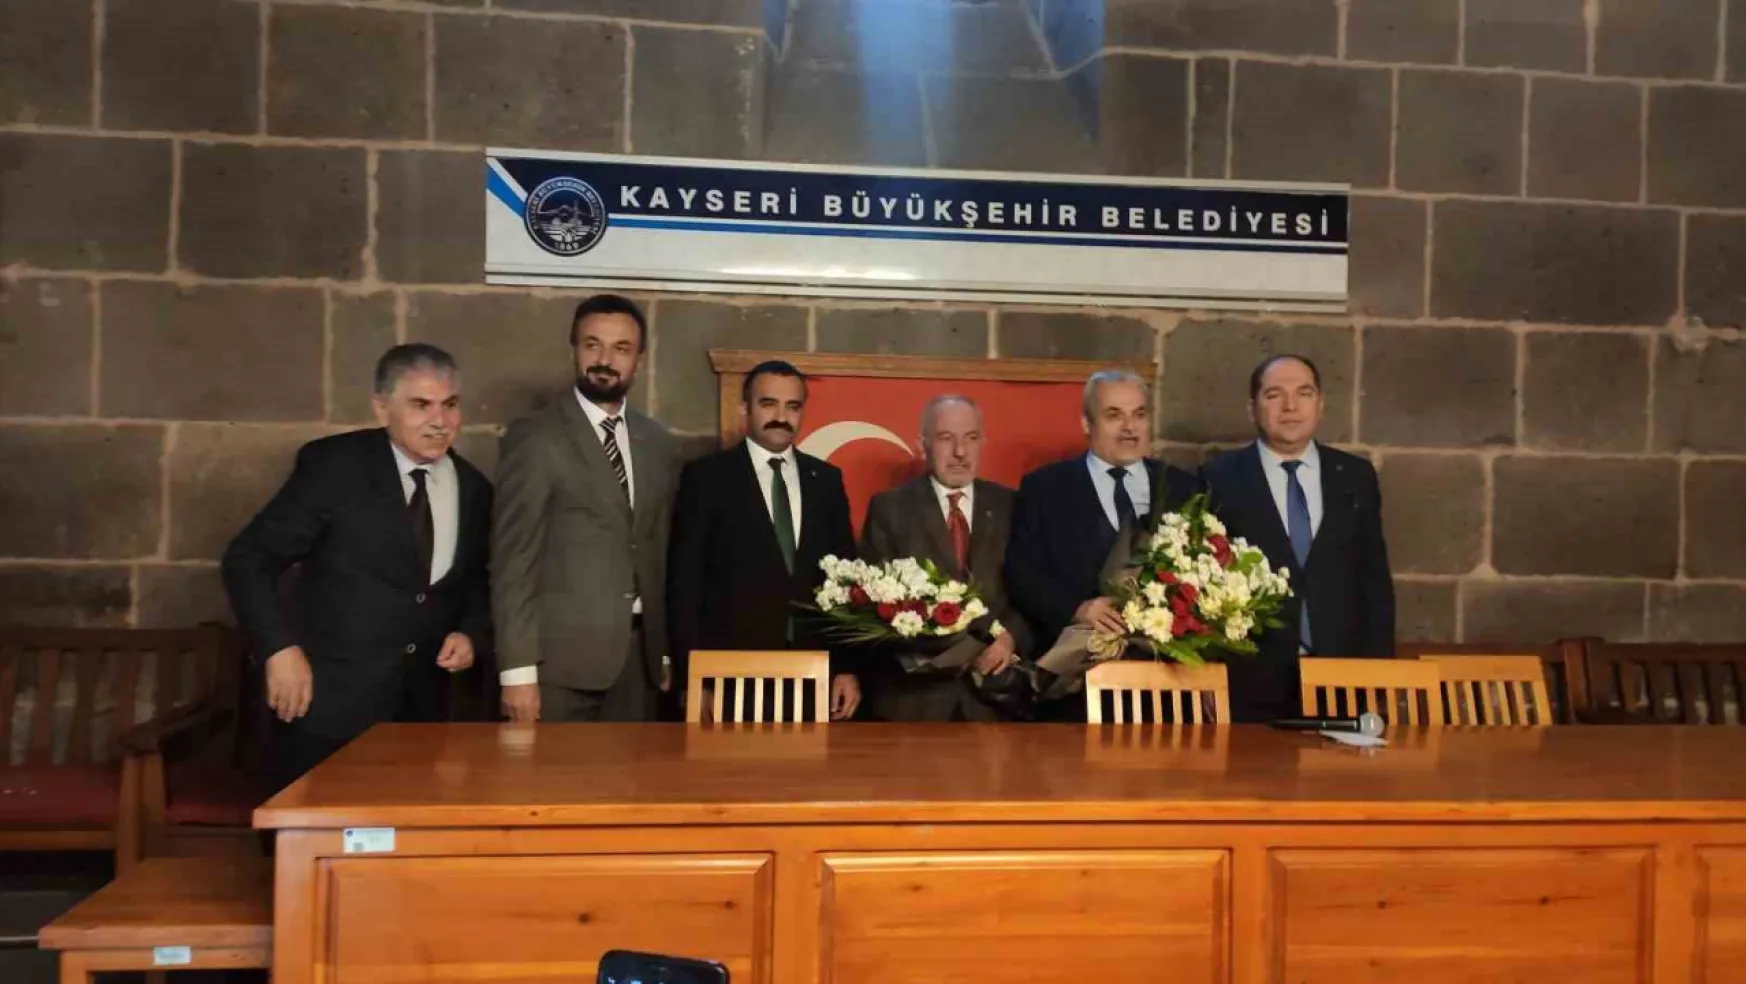 Eyvan Sohbetleri'nin konusu 'Kayseri'de Ramazan gelenekleri' oldu